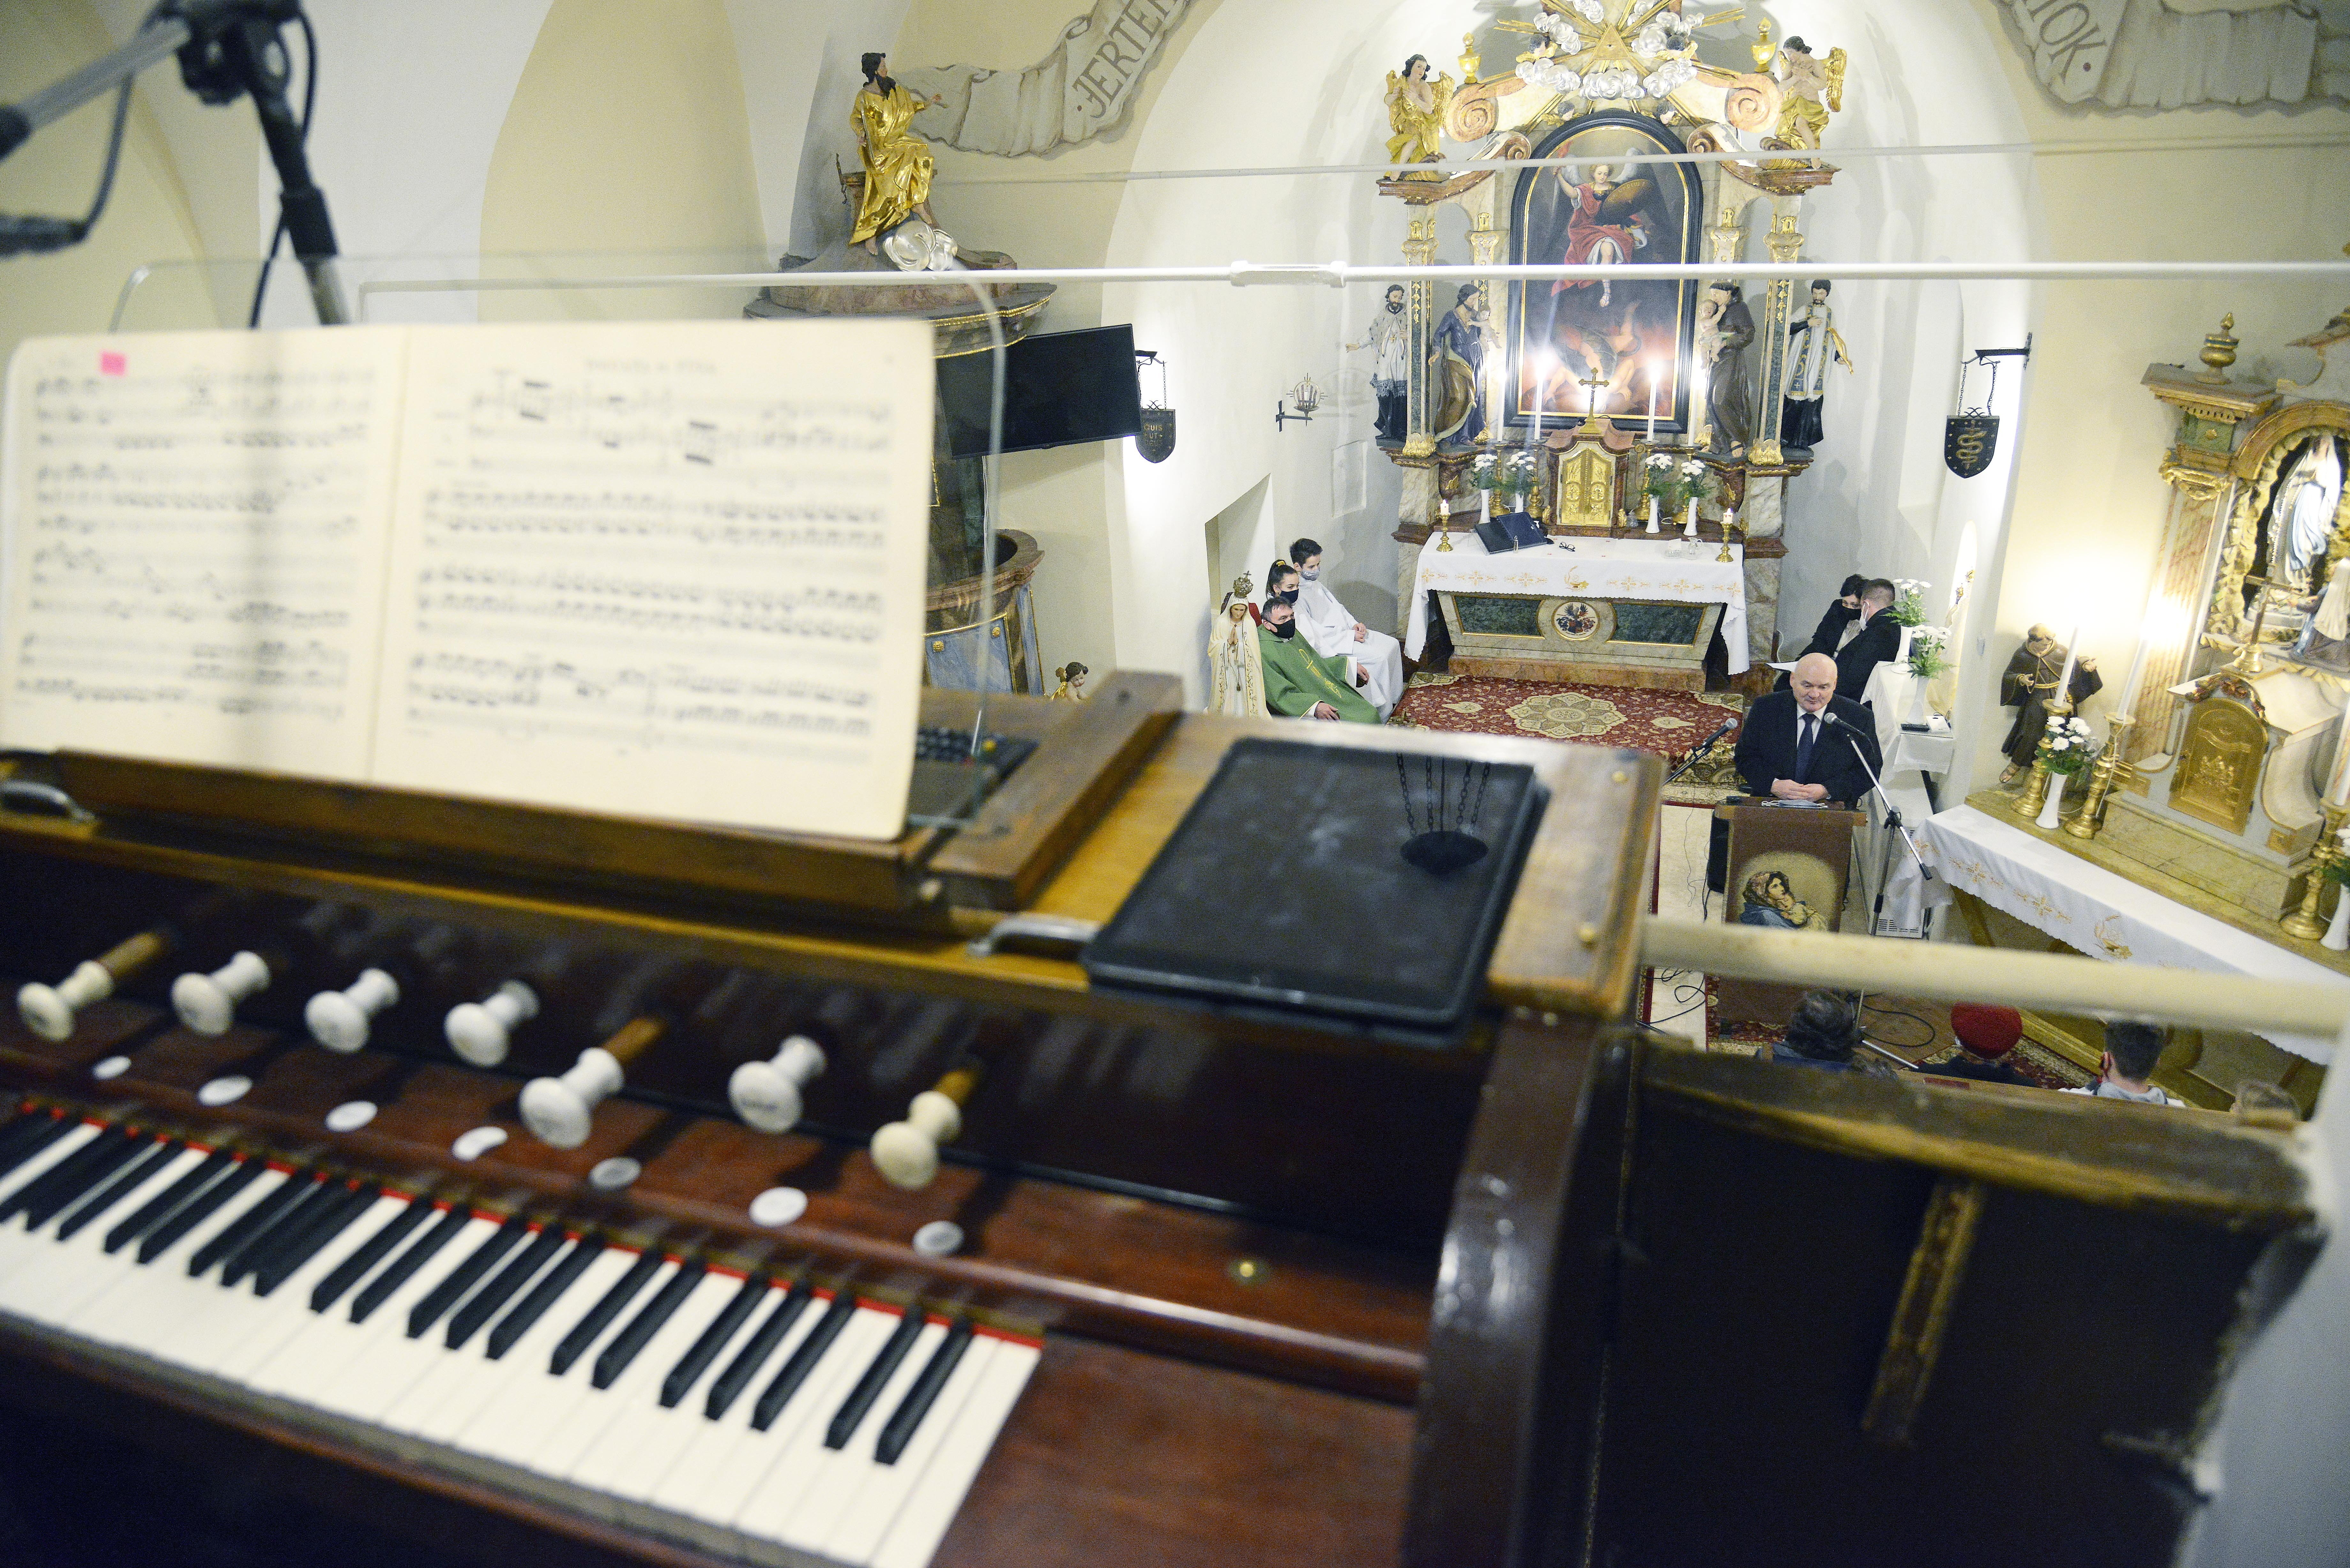 Bejelentették, hogy 350 milliót osztottak szét vallásos könnyűzenészek között, pedig a pénz komoly részét templomi orgonák javítására adták